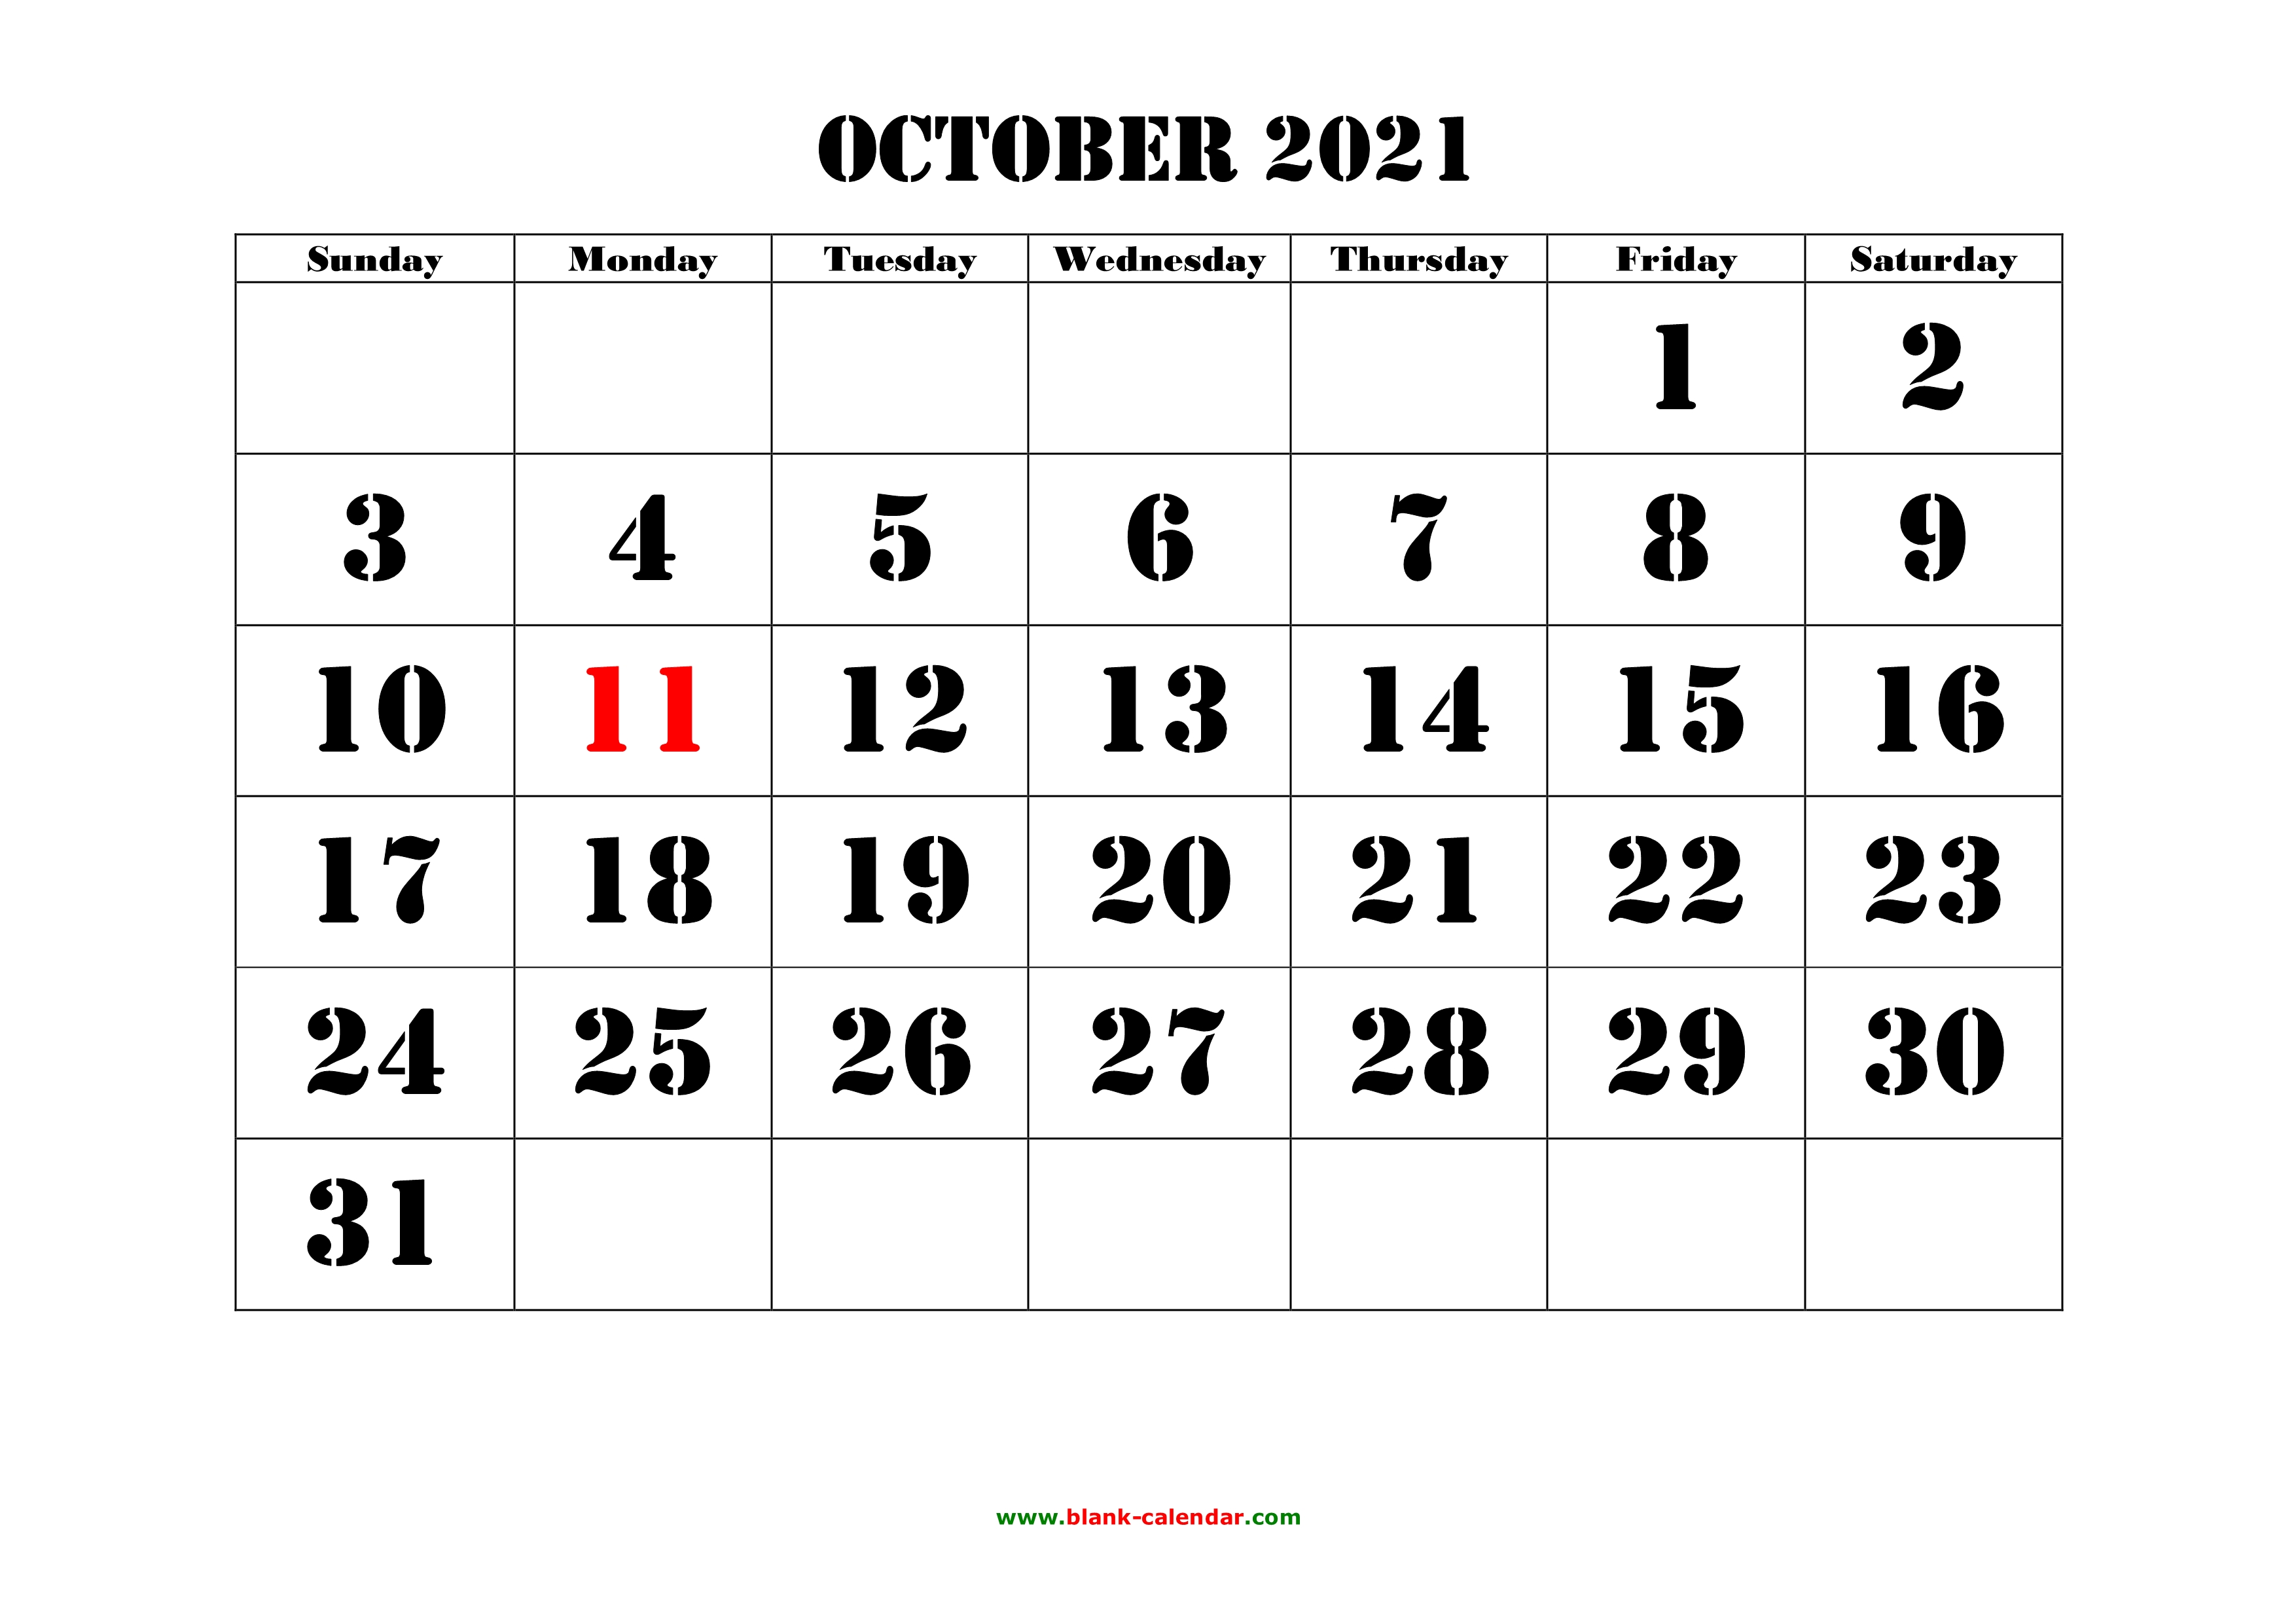 oct 2021 printable calendar Free Download Printable October 2021 Calendar Large Font Design Holidays On Red oct 2021 printable calendar